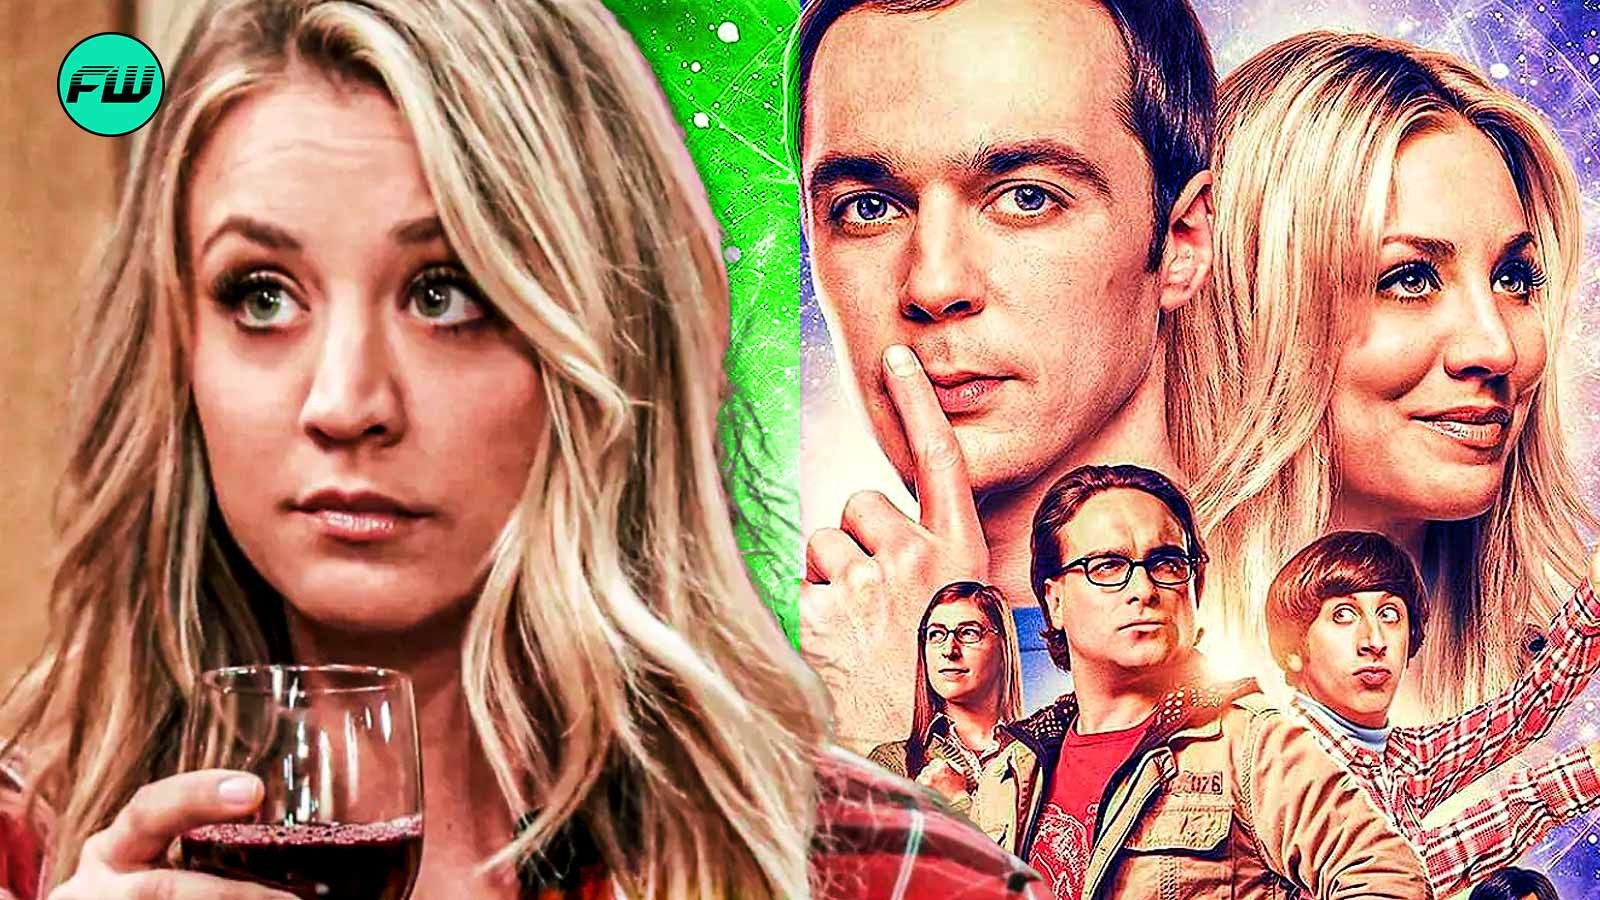 Kaley Cuoco and Big Bang Theory